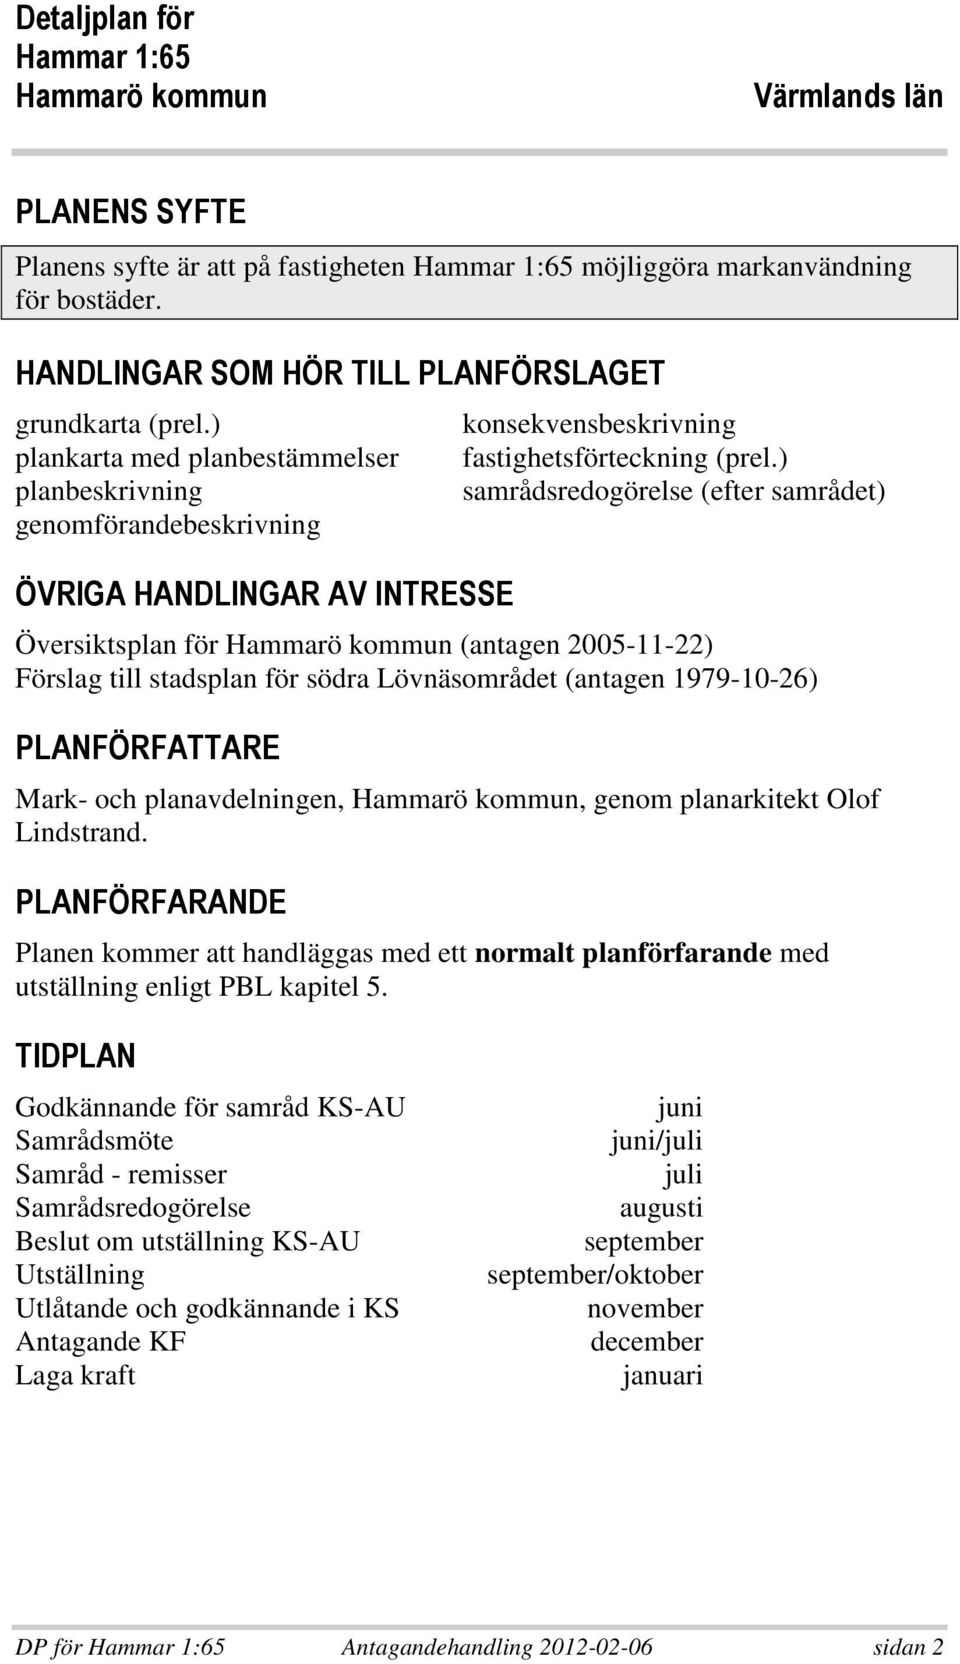 ) samrådsredogörelse (efter samrådet) Översiktsplan för Hammarö kommun (antagen 2005-11-22) Förslag till stadsplan för södra Lövnäsområdet (antagen 1979-10-26) * - - Mark- och planavdelningen,